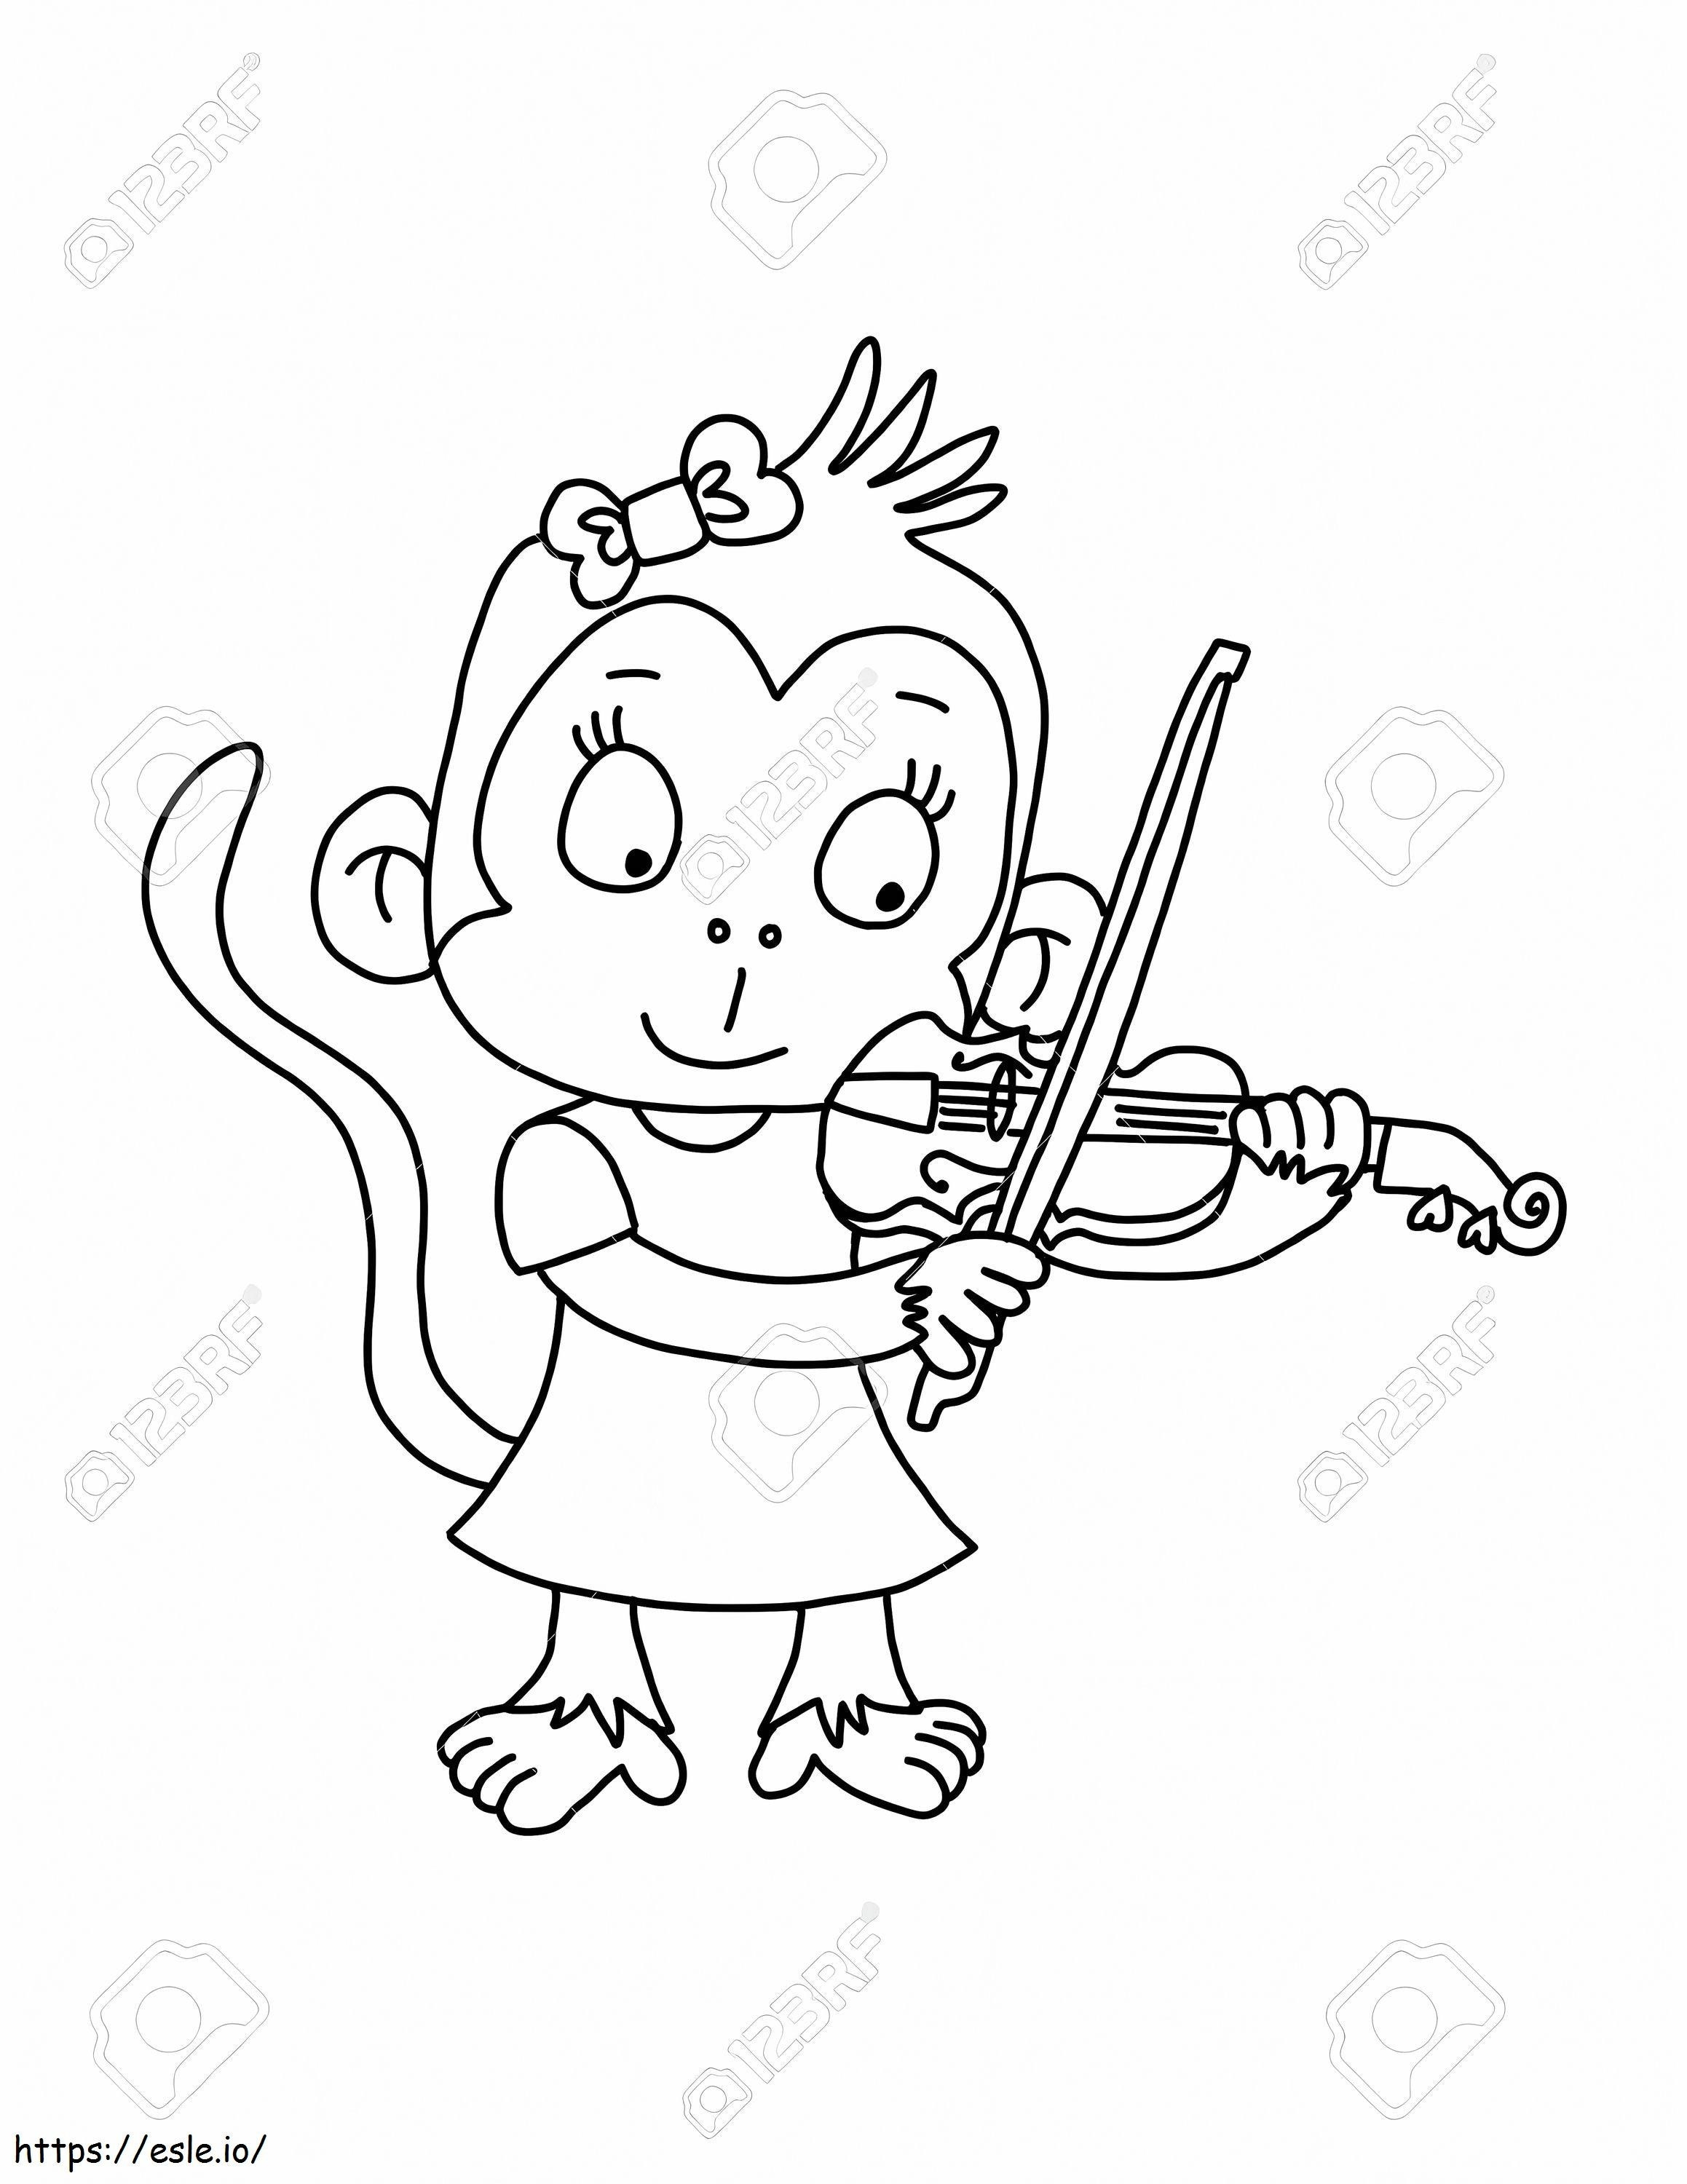 1539402795 69128129 Scimmia carina che suona il violino da colorare